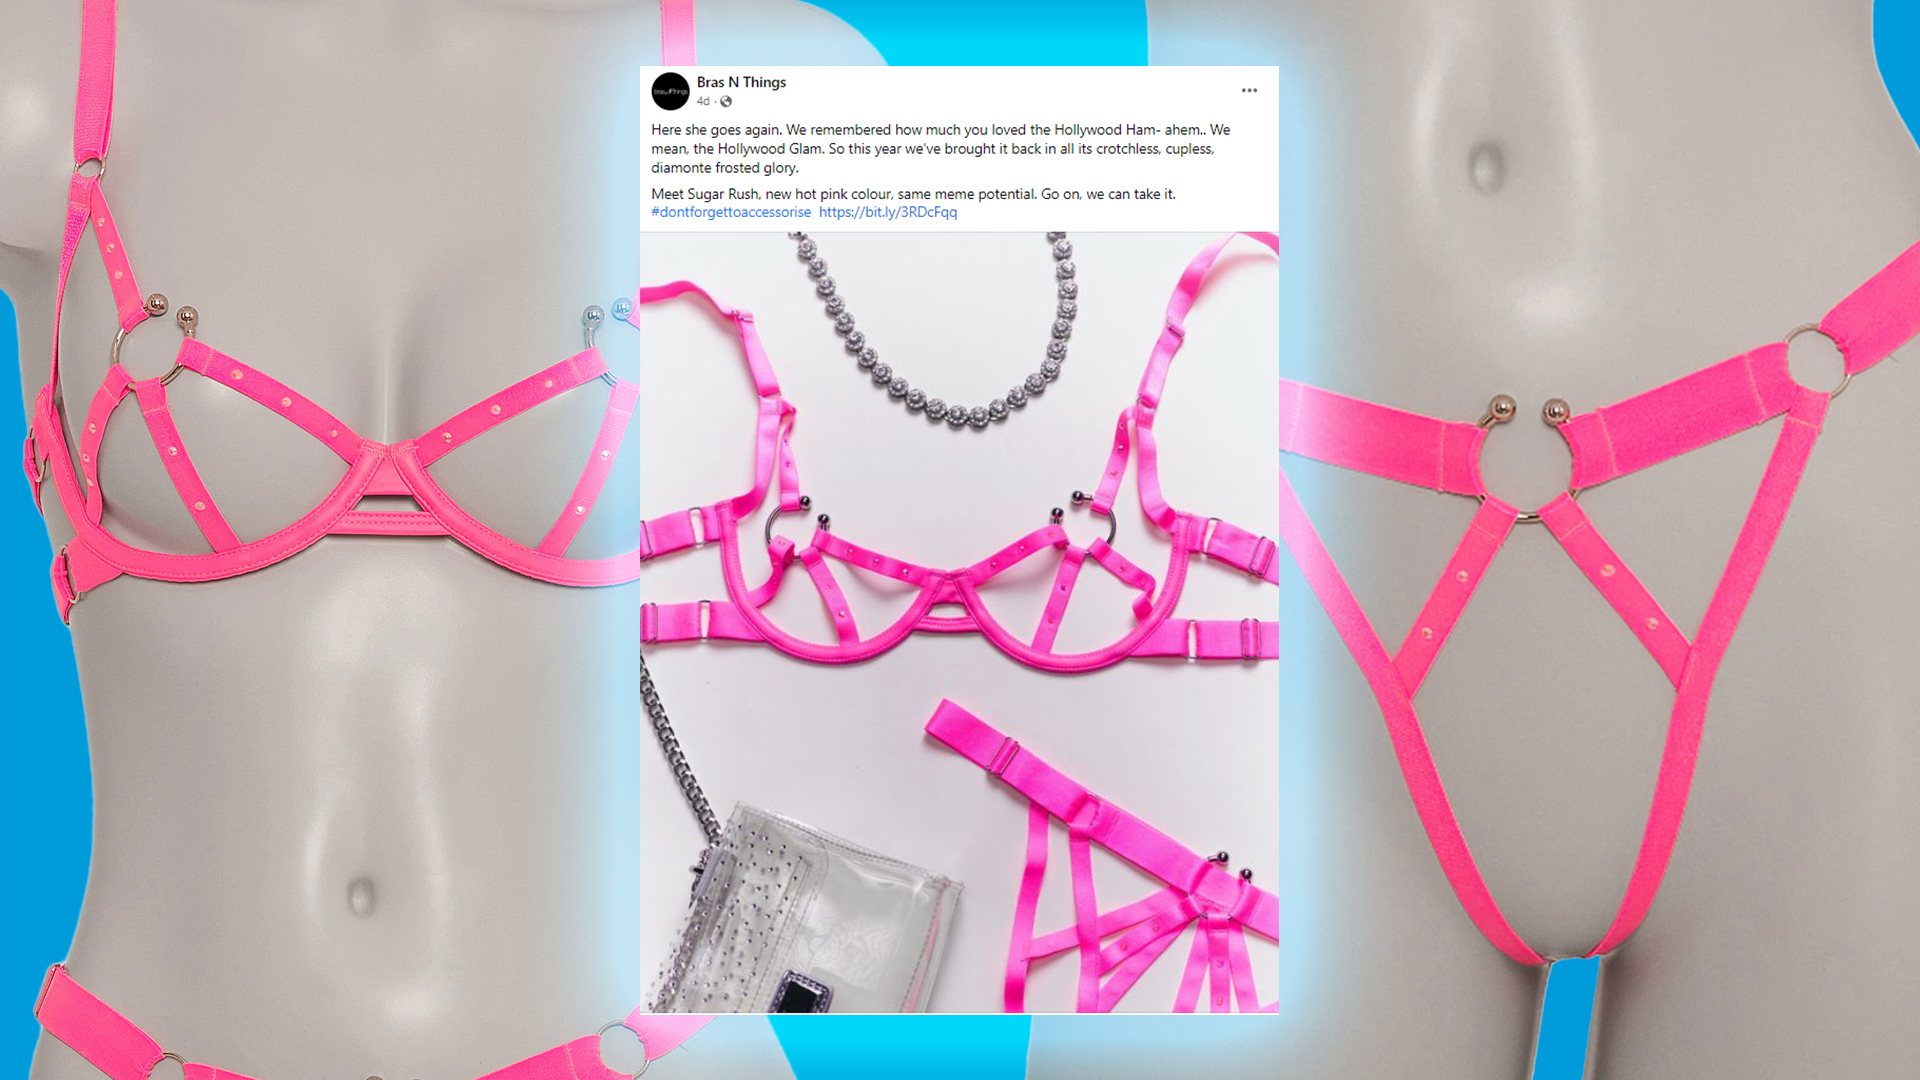 Bras N Things puts its designers in lingerie - Ragtrader